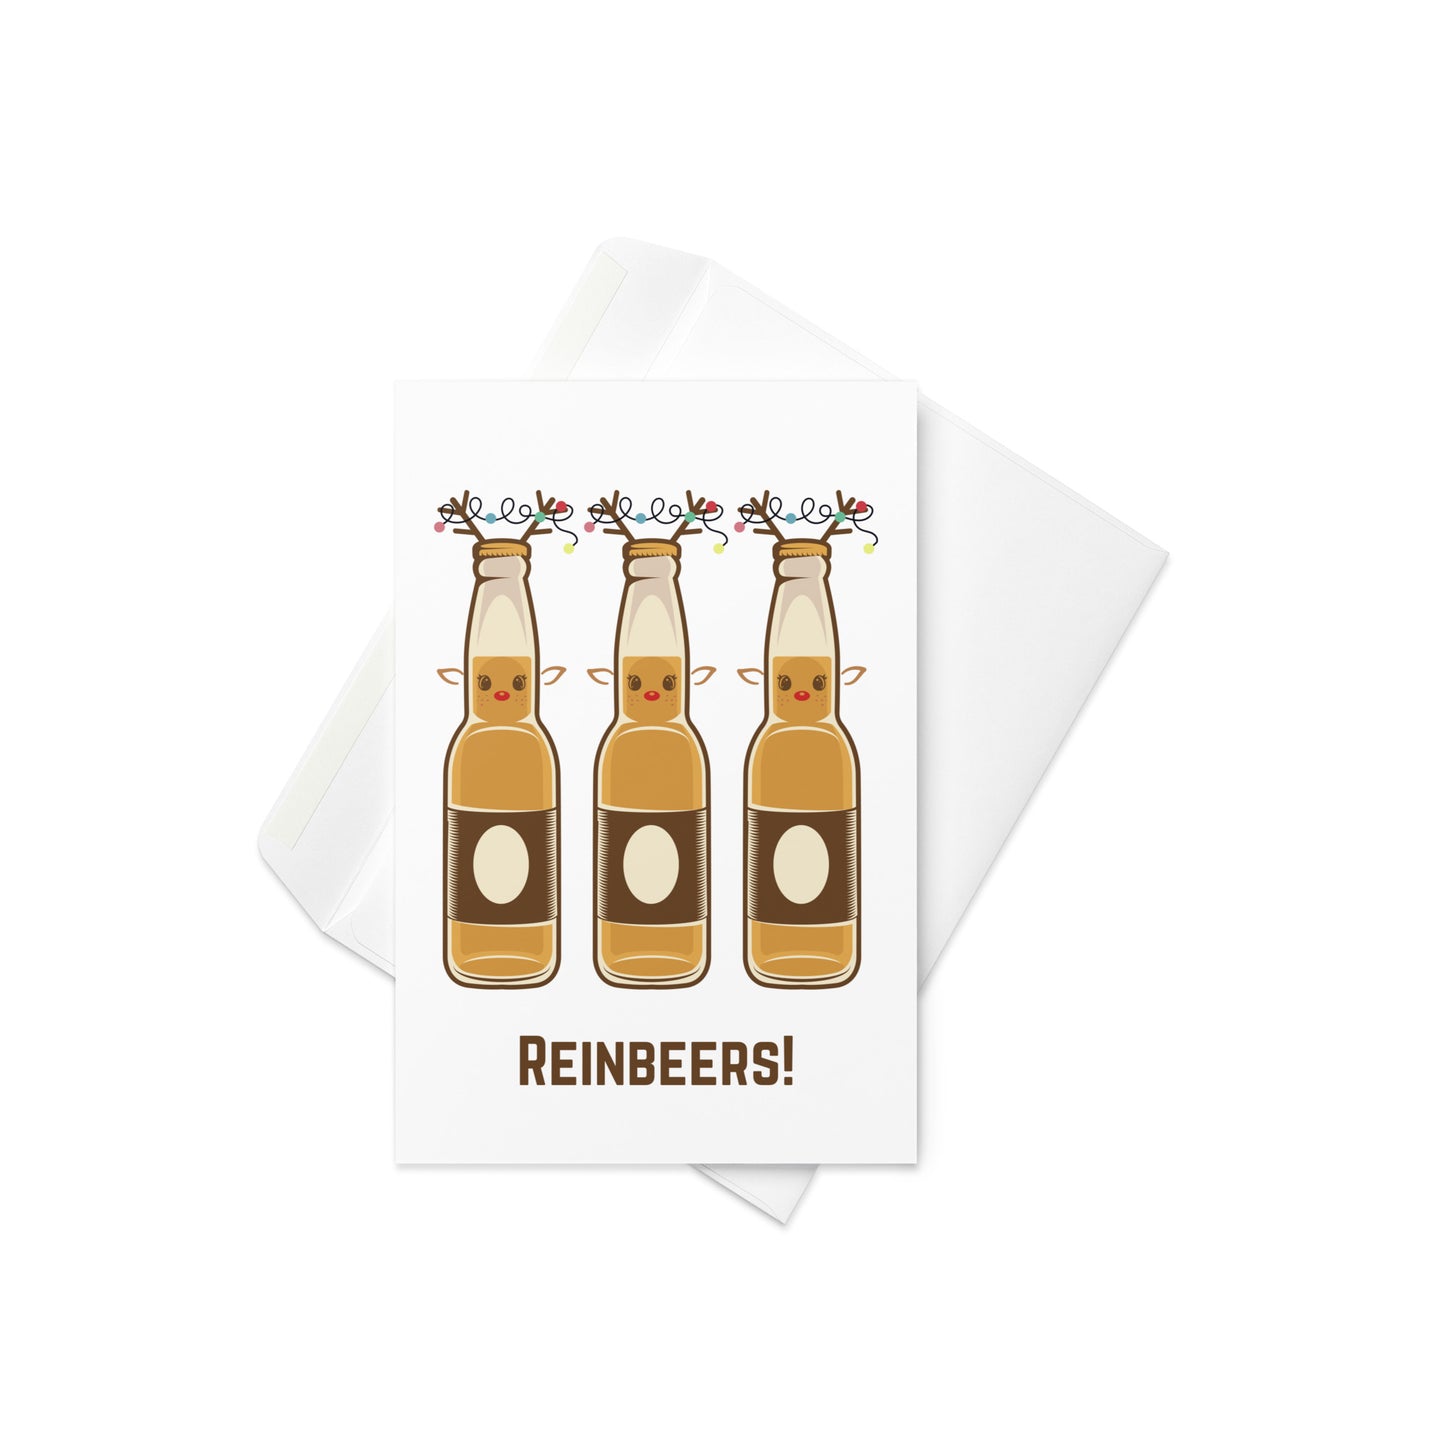 Reinbeers! Greeting Card